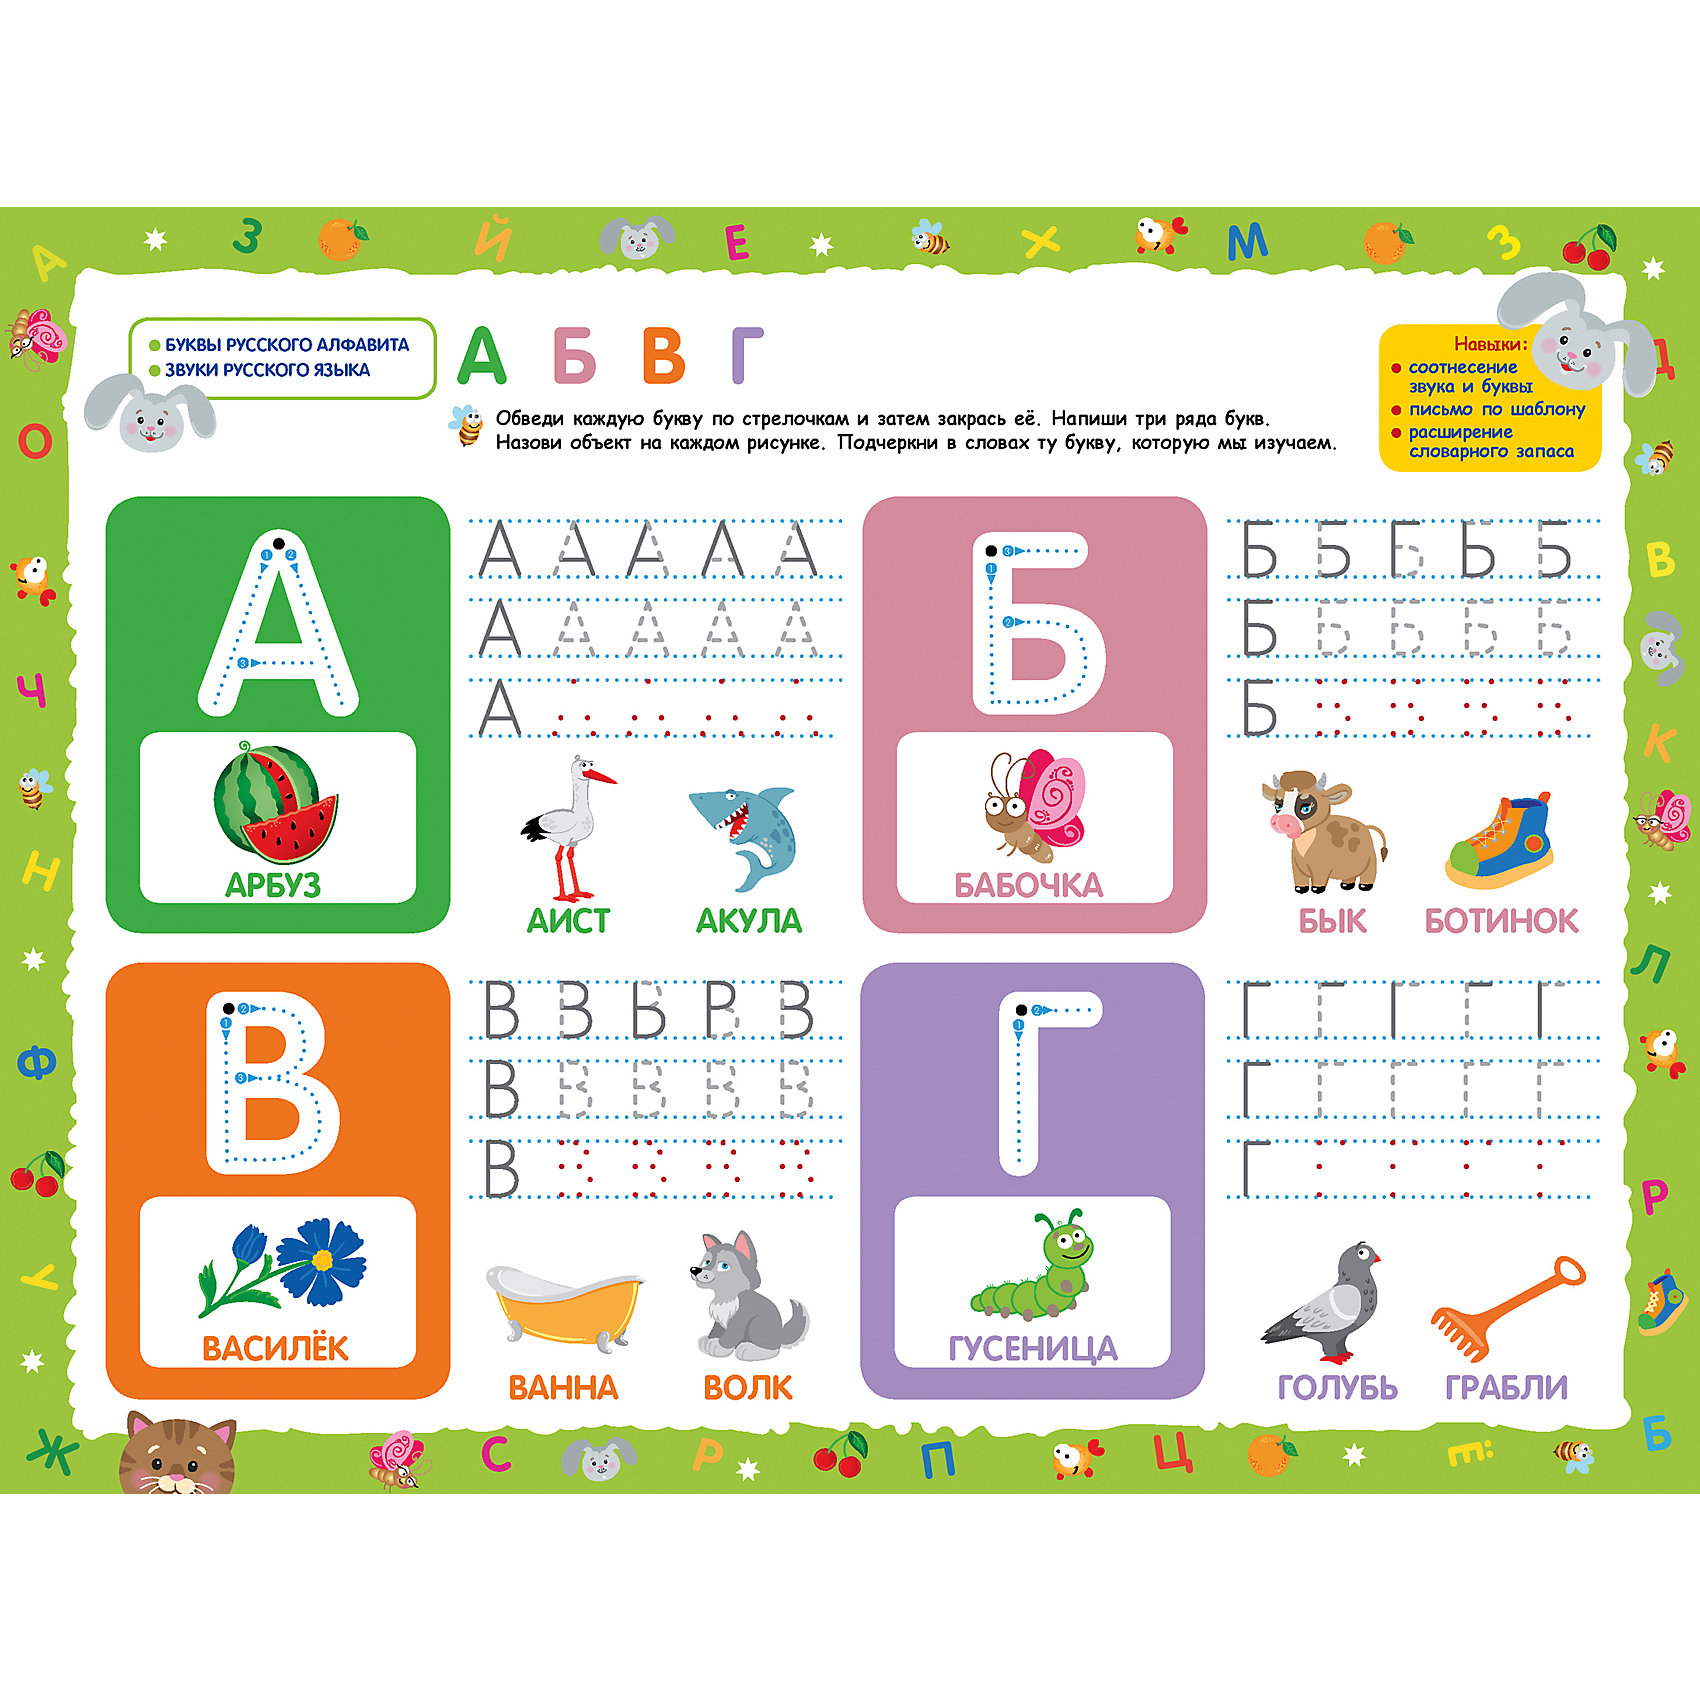 Азбука для малышей буквы. Учим буквы. Изучение алфавита. Изучаем алфавит. Изучение буквы а в игровой форме.